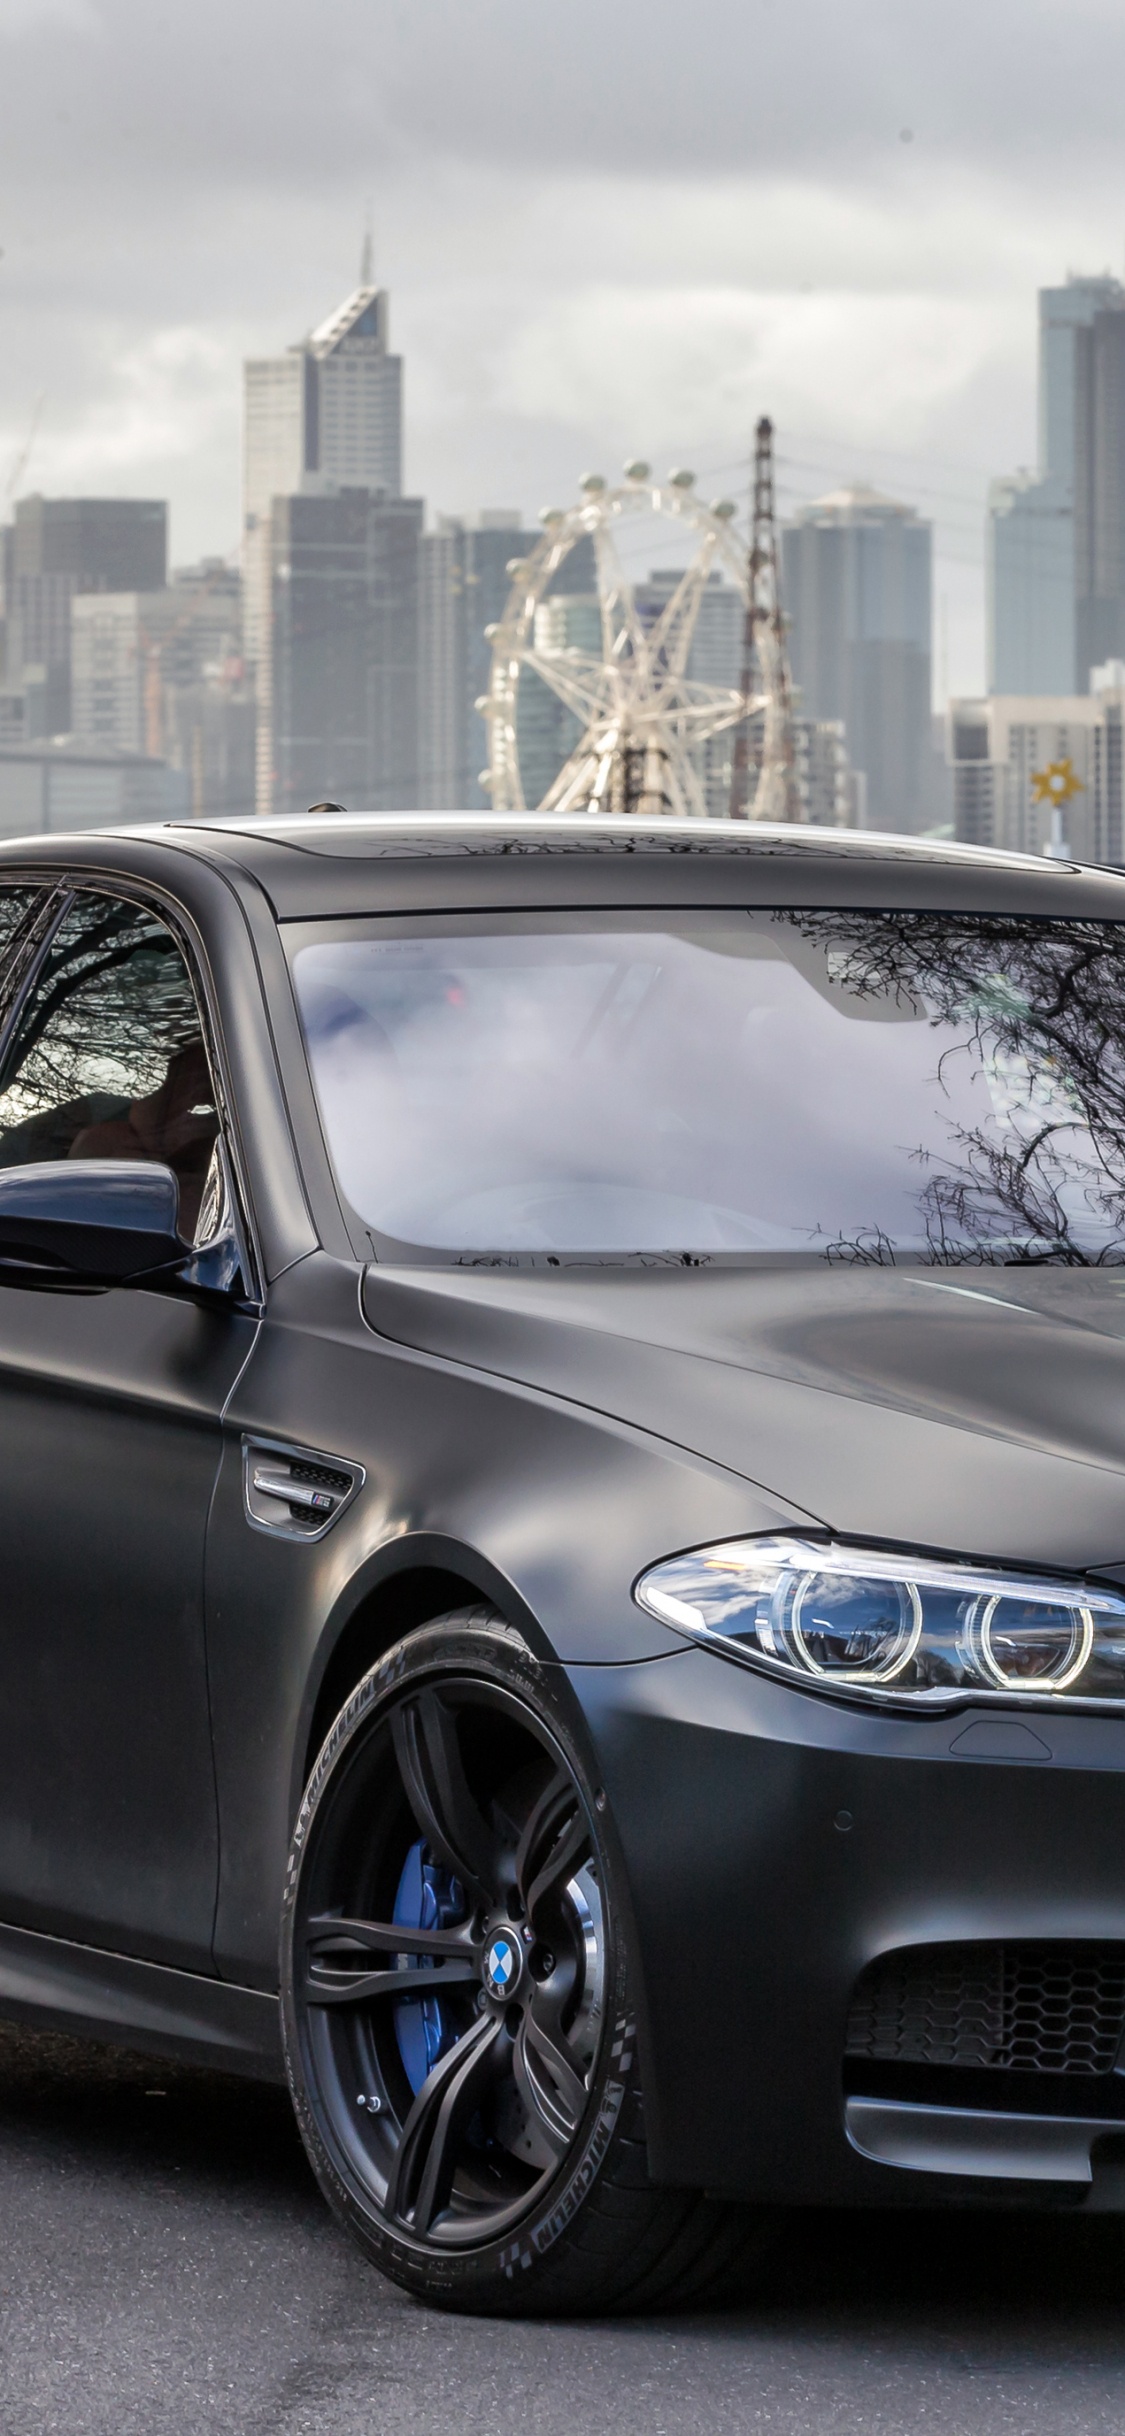 2018年BMW M5, 宝马, 宝马5系, 执行汽车, 铝合金轮毂 壁纸 1125x2436 允许